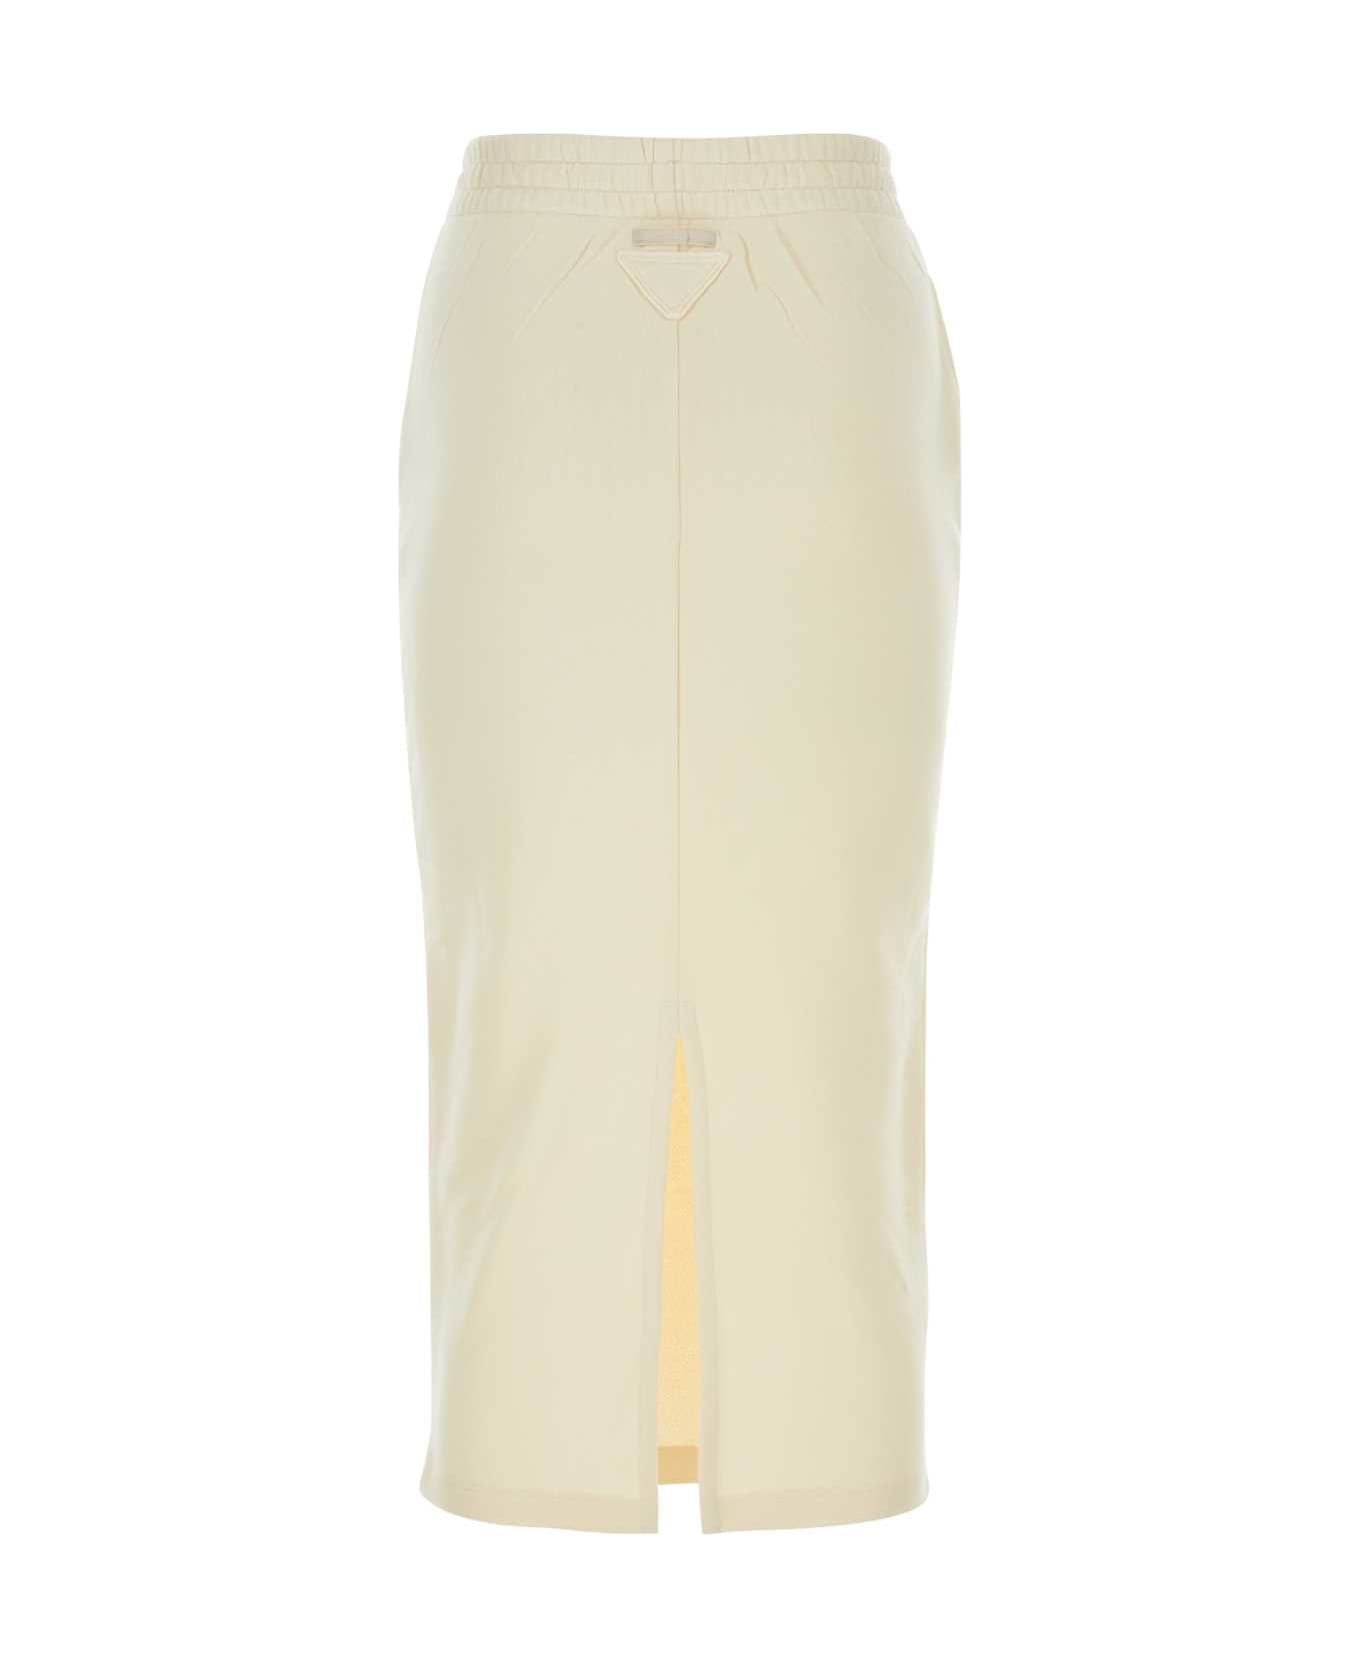 Prada Cream Cotton Skirt - NATURALE スカート